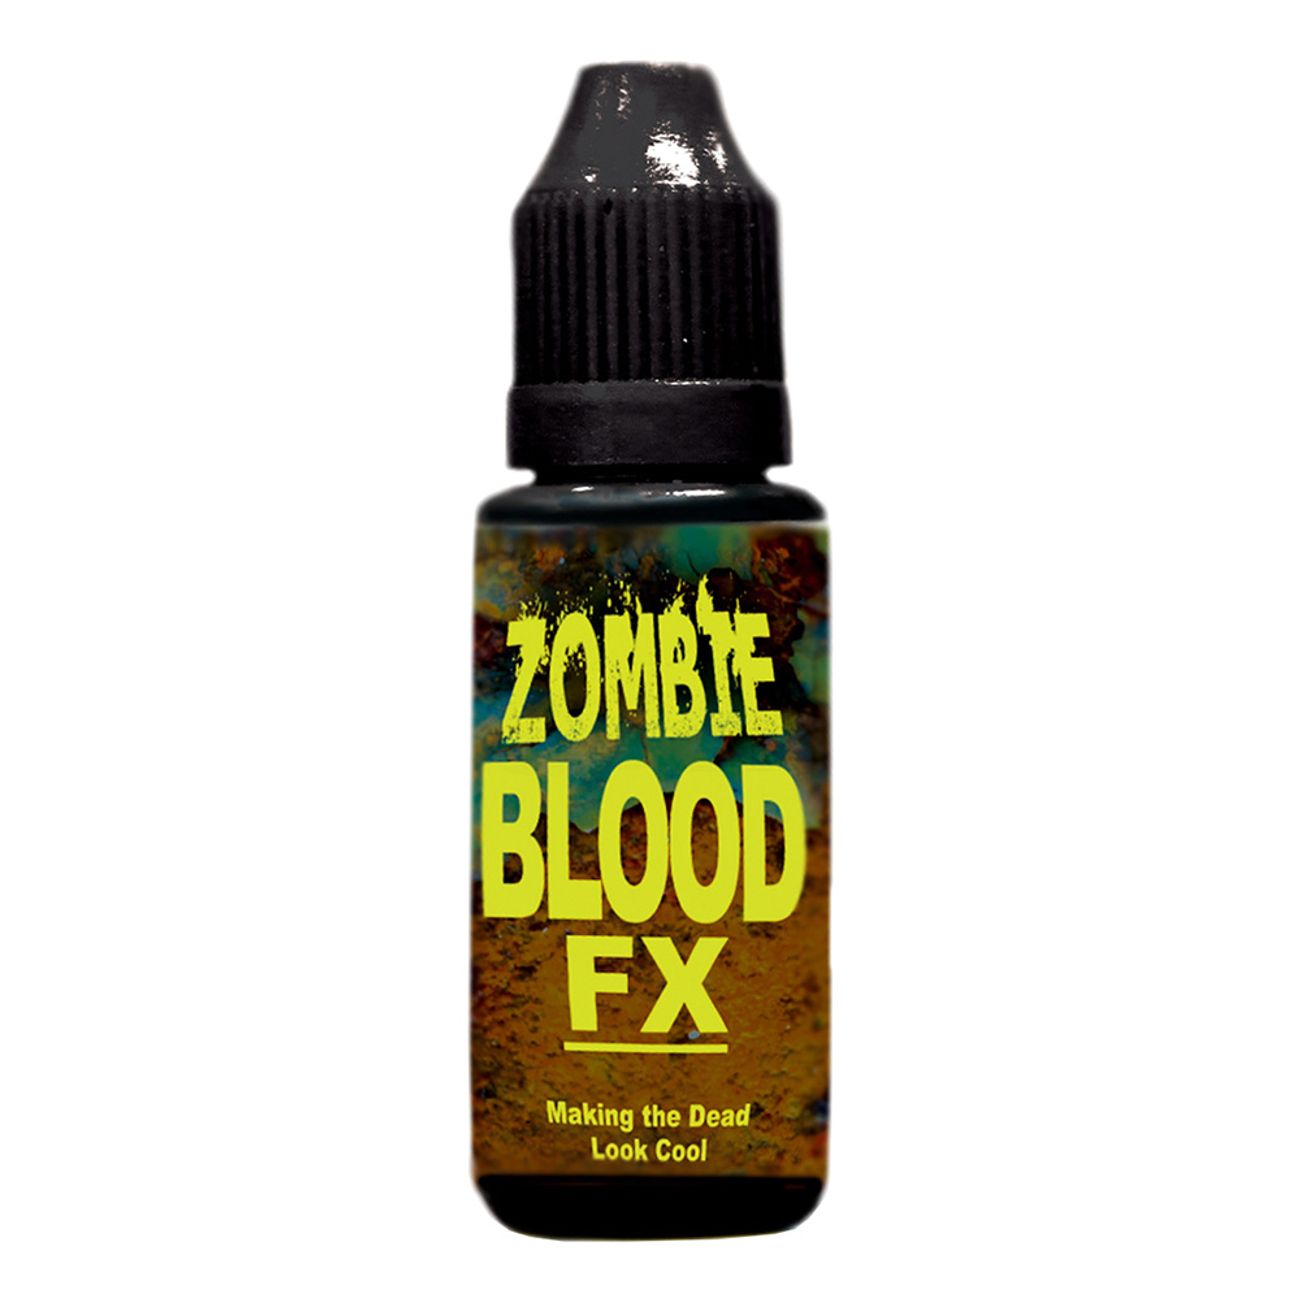 fejkblod-fx-zombie-1